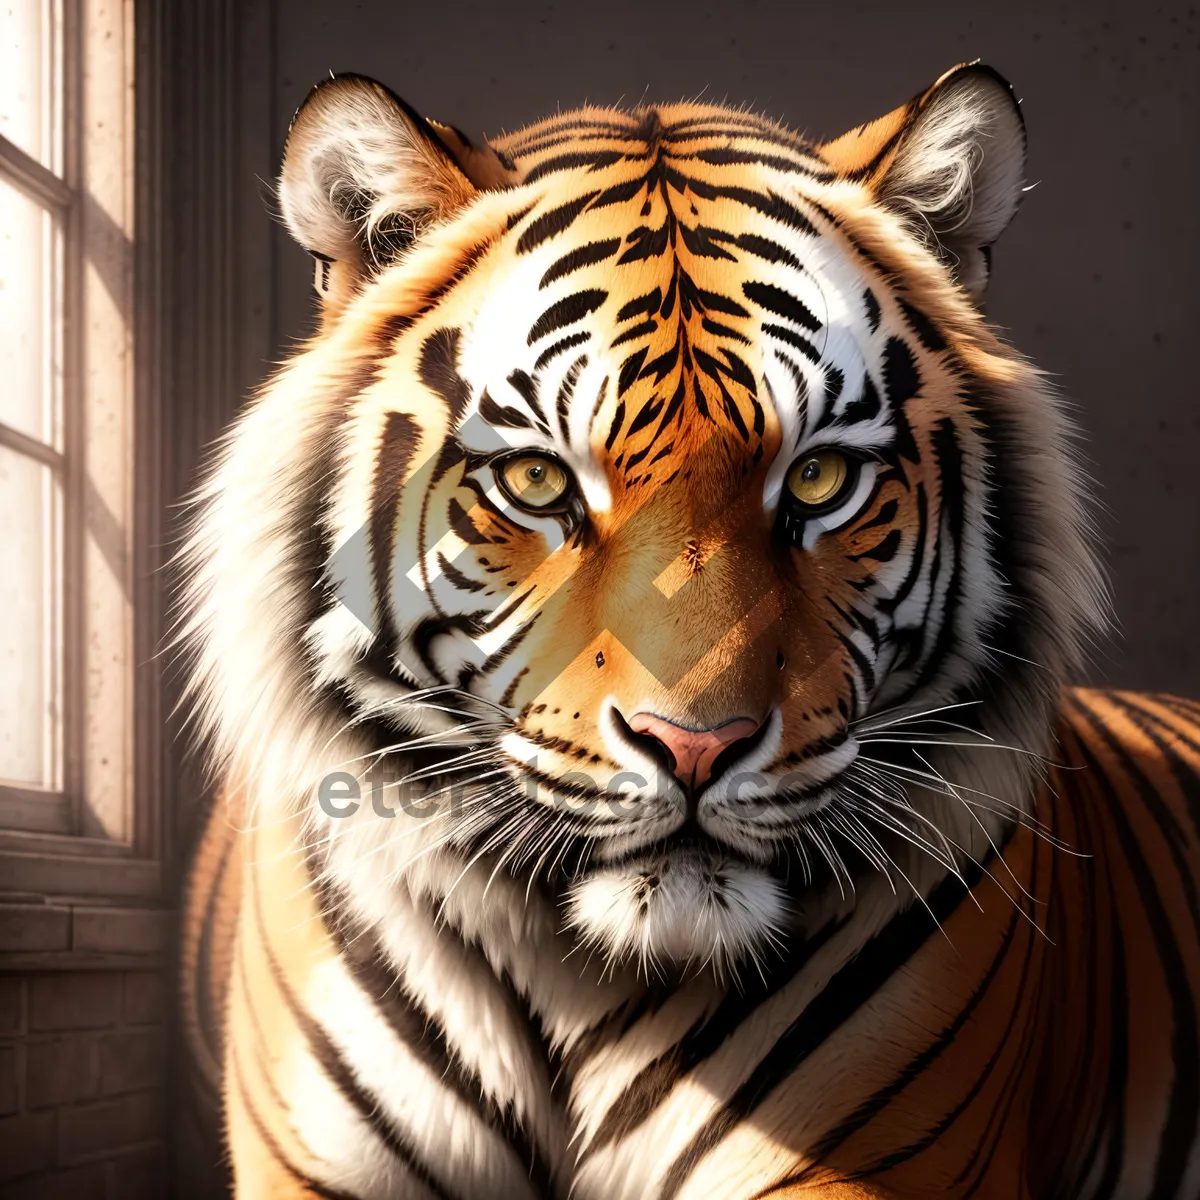 Picture of Striped Jungle Predator: Majestic Tiger Cat in the Wild